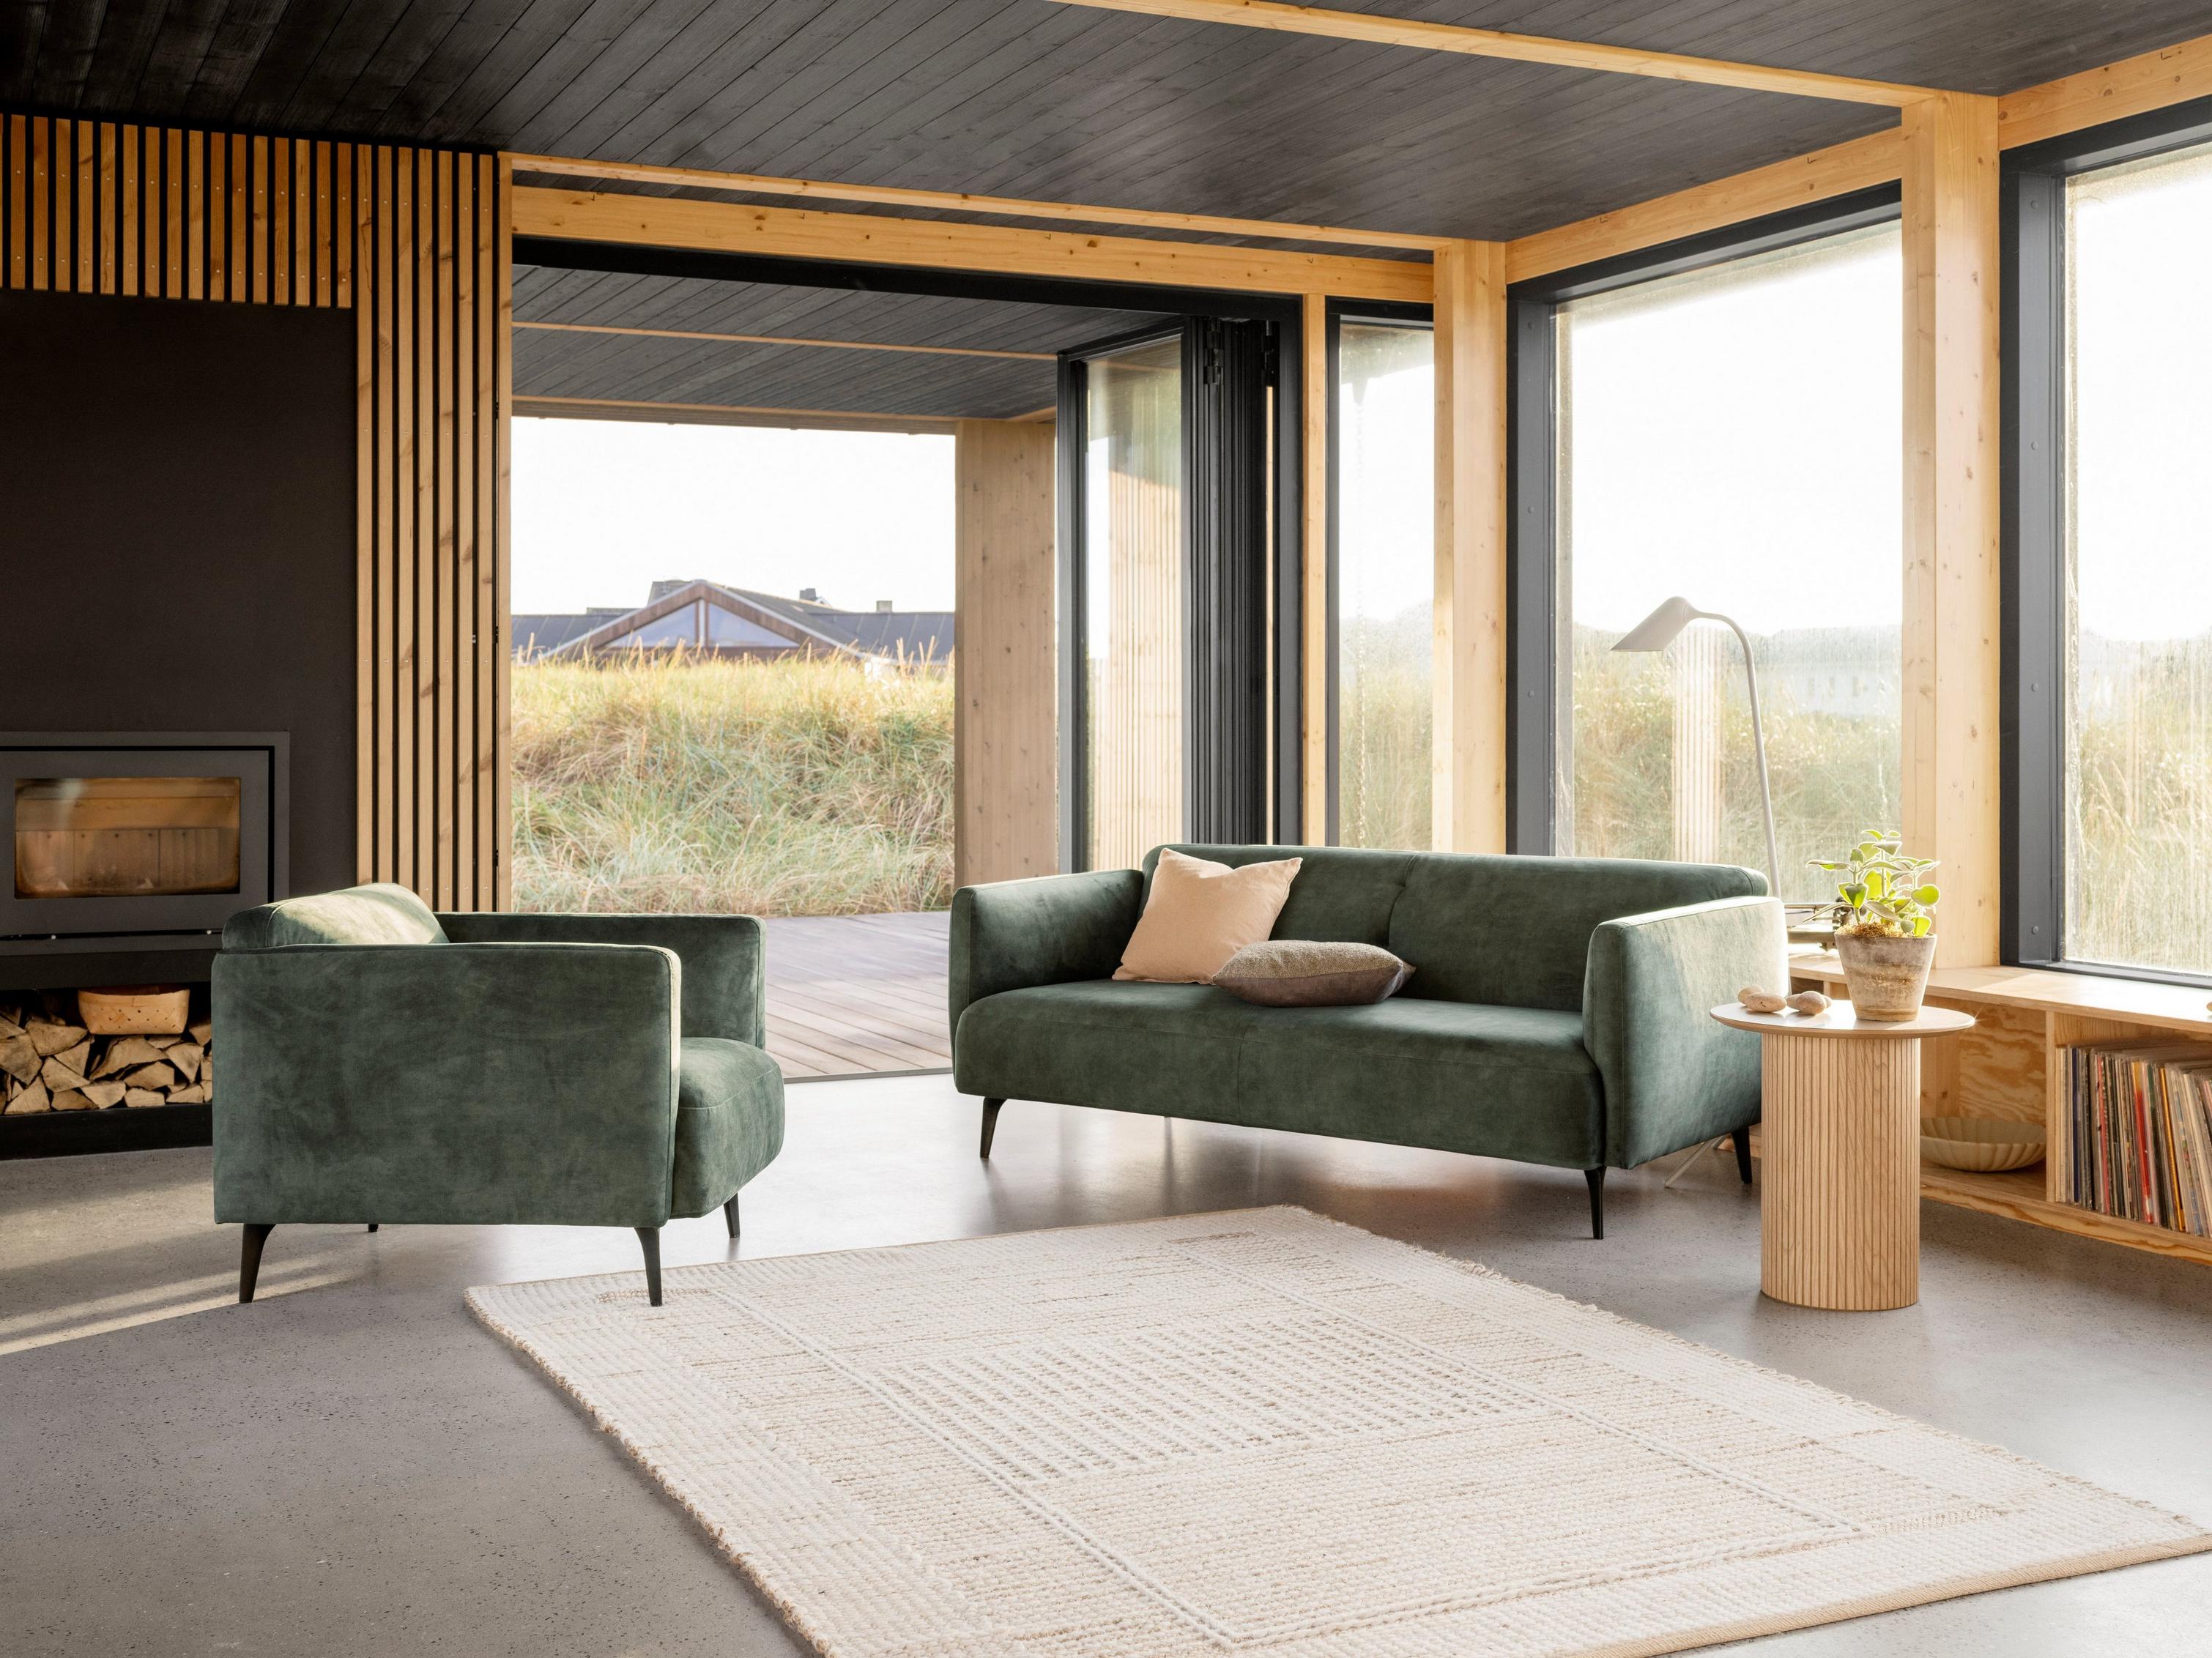 优雅的 Modena 沙发和配套的灰绿色 Ravello 面料扶手椅摆放在这个温暖起居室的壁炉旁。